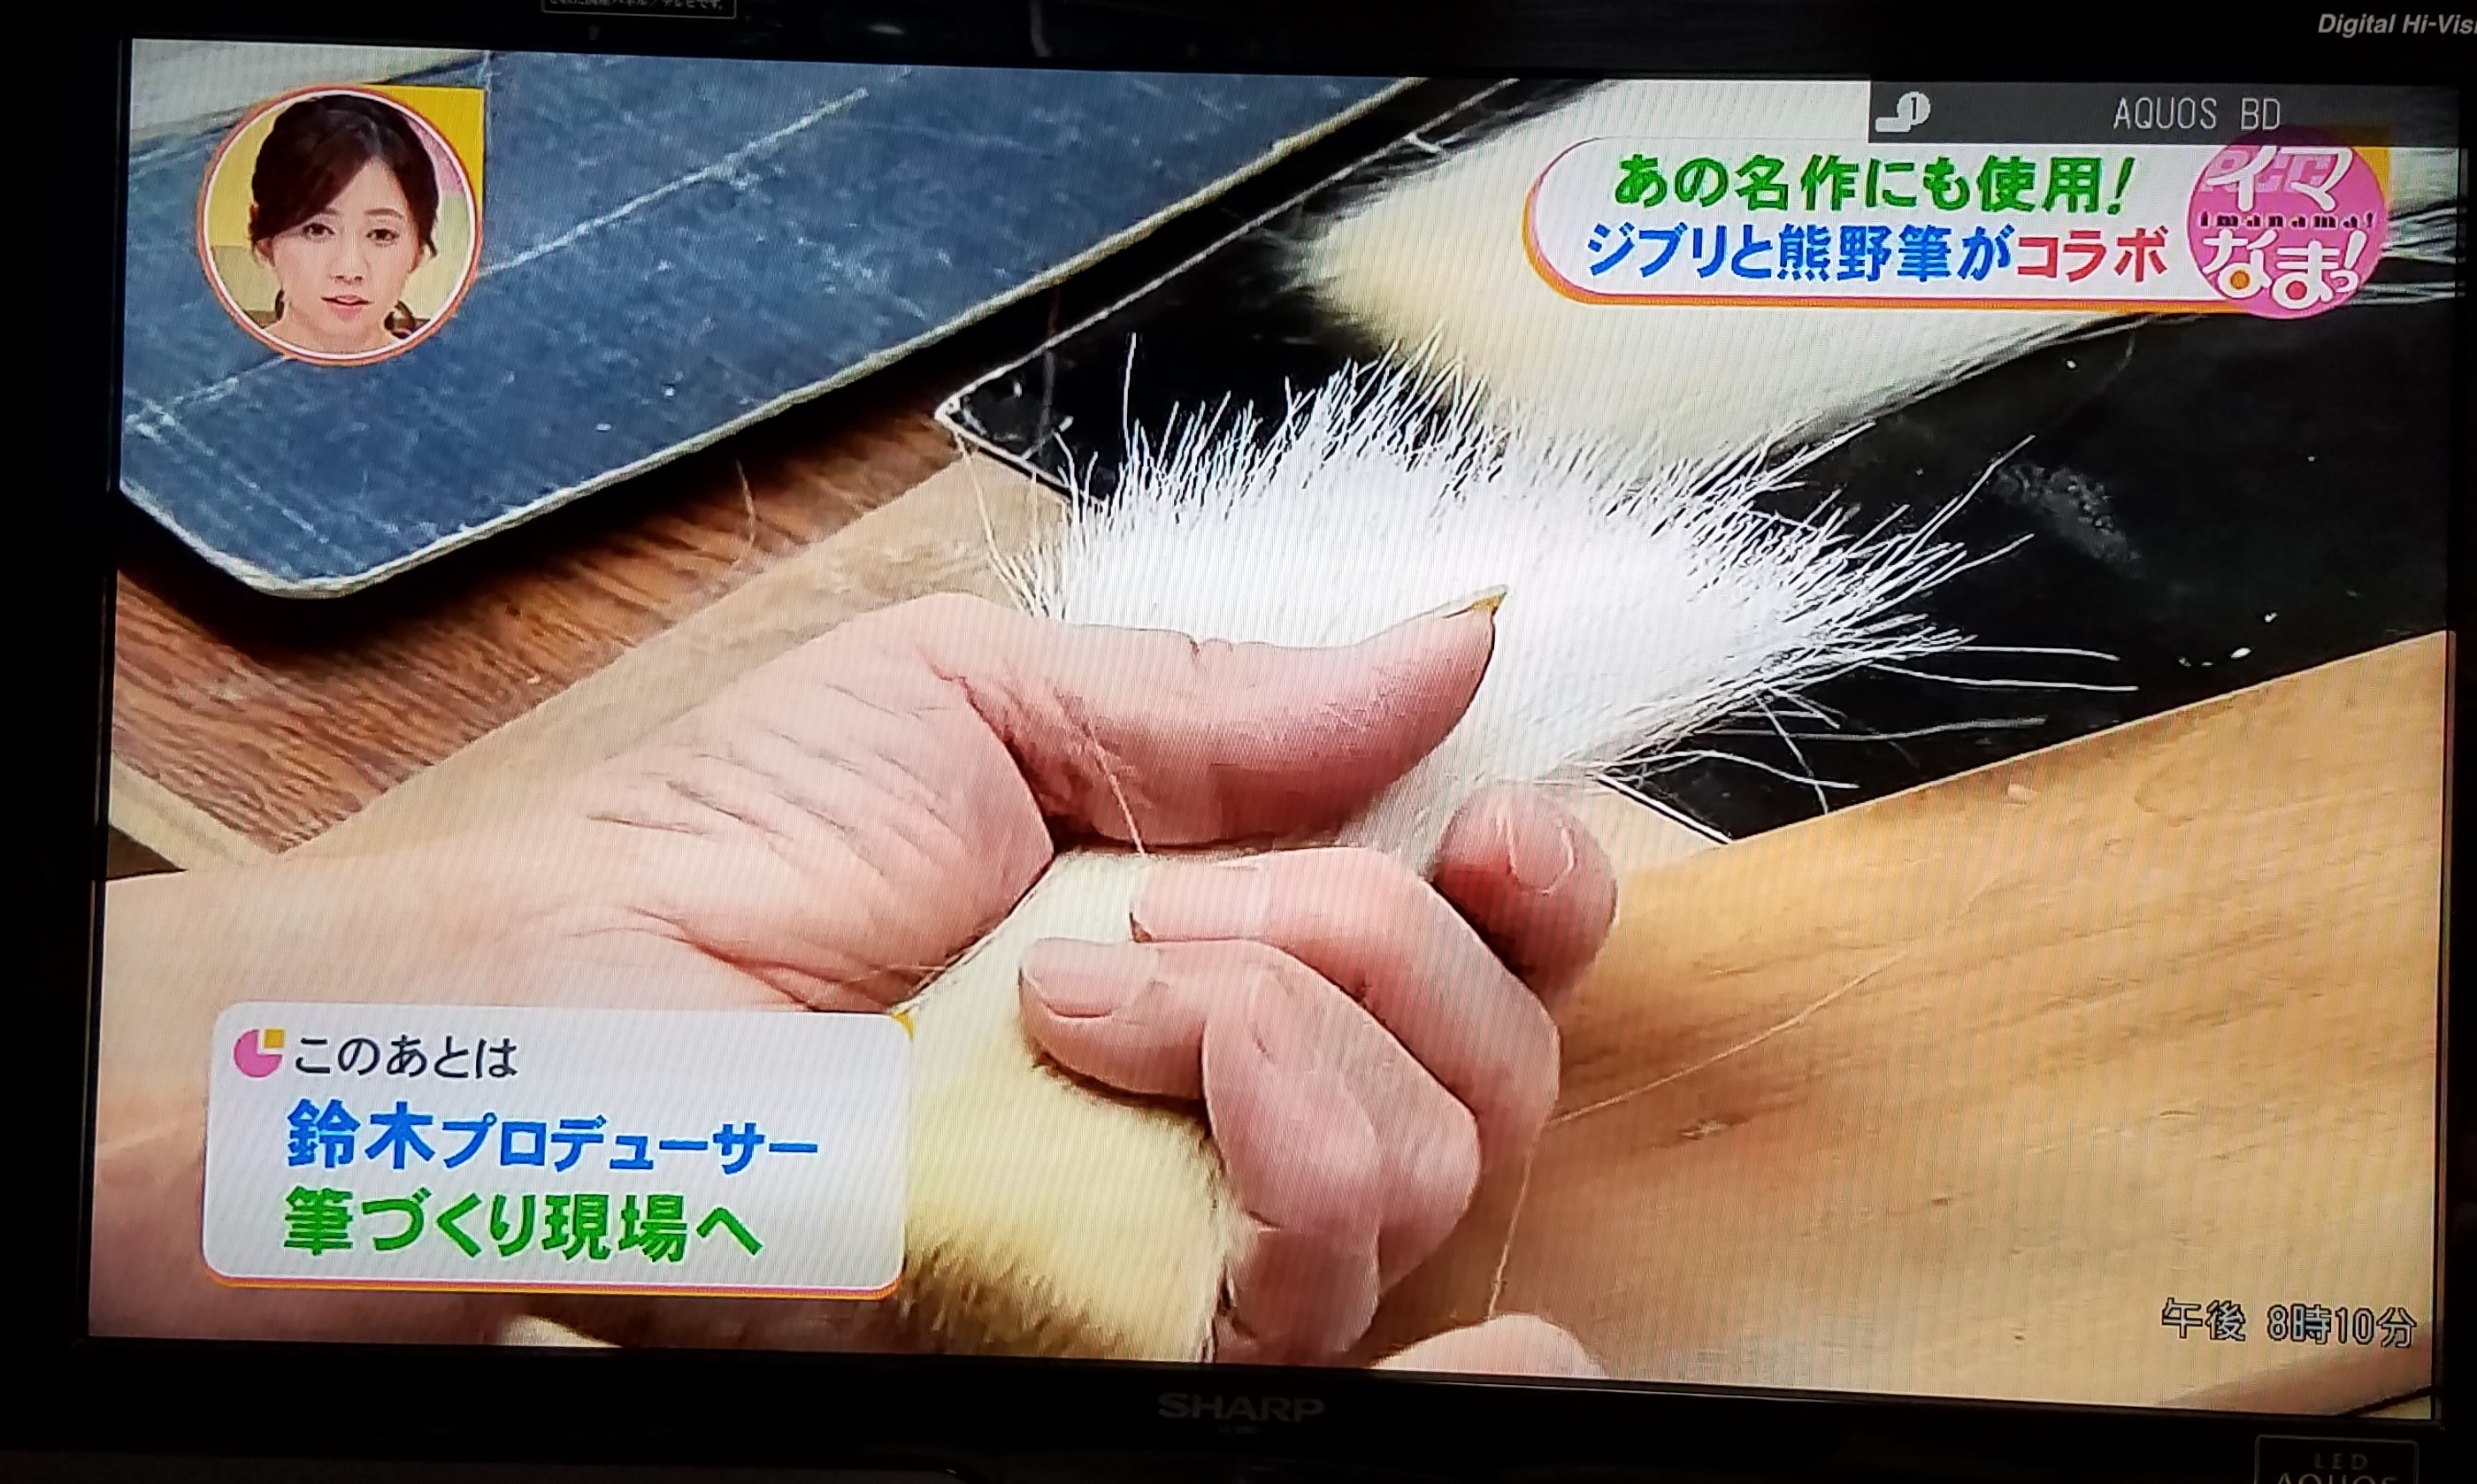 熊野筆をつくる伝統工芸士の熟練の技と手仕事で銘筆が生まれます。